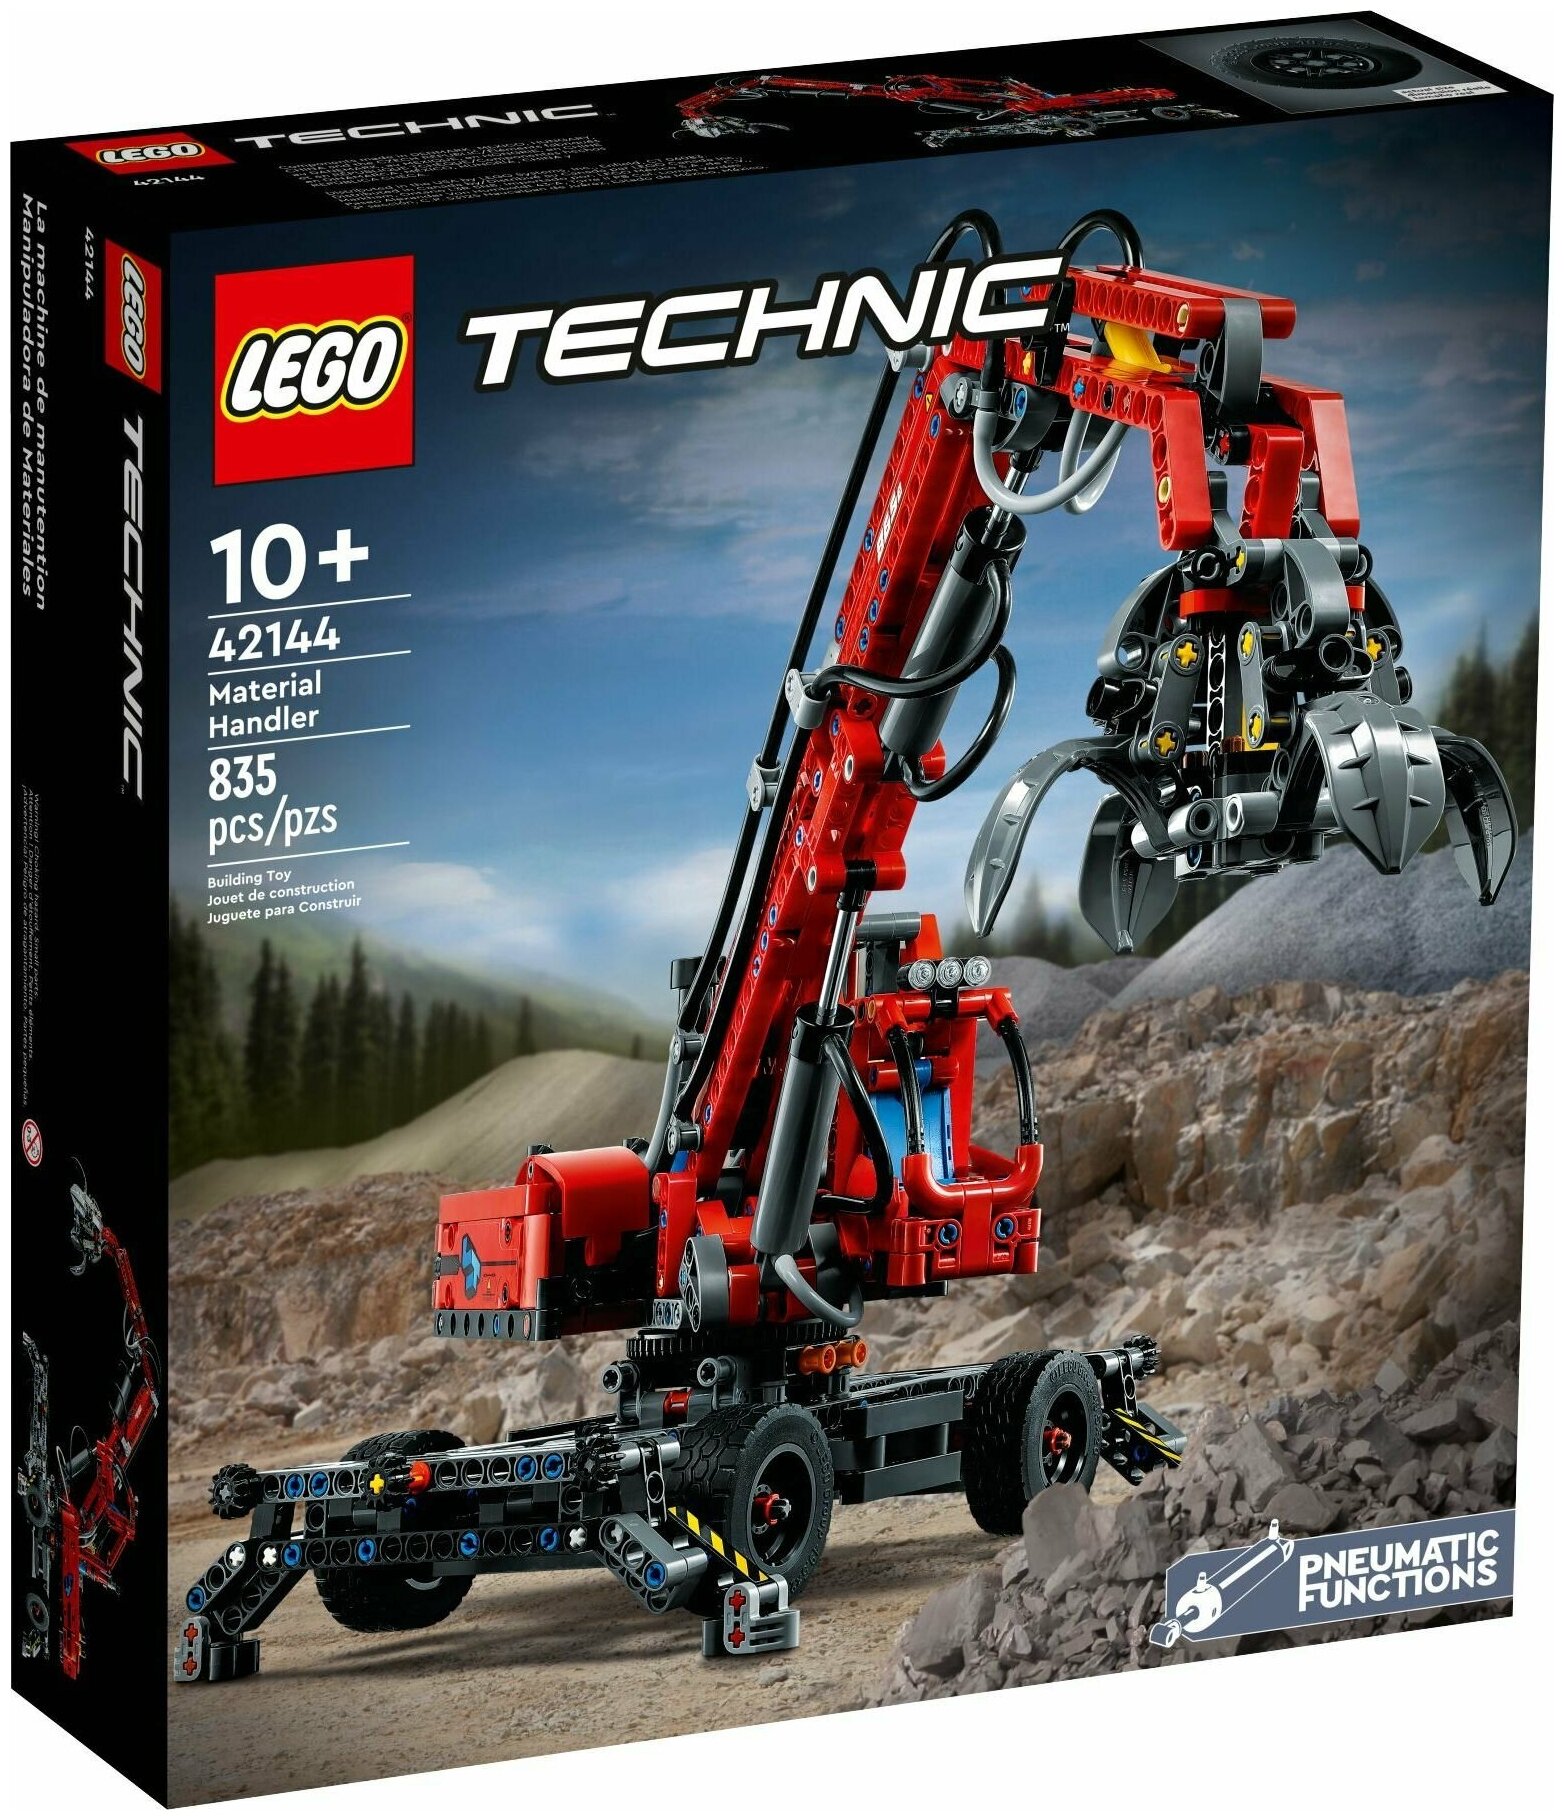 Конструктор Lego Technic Погрузчик, 42144